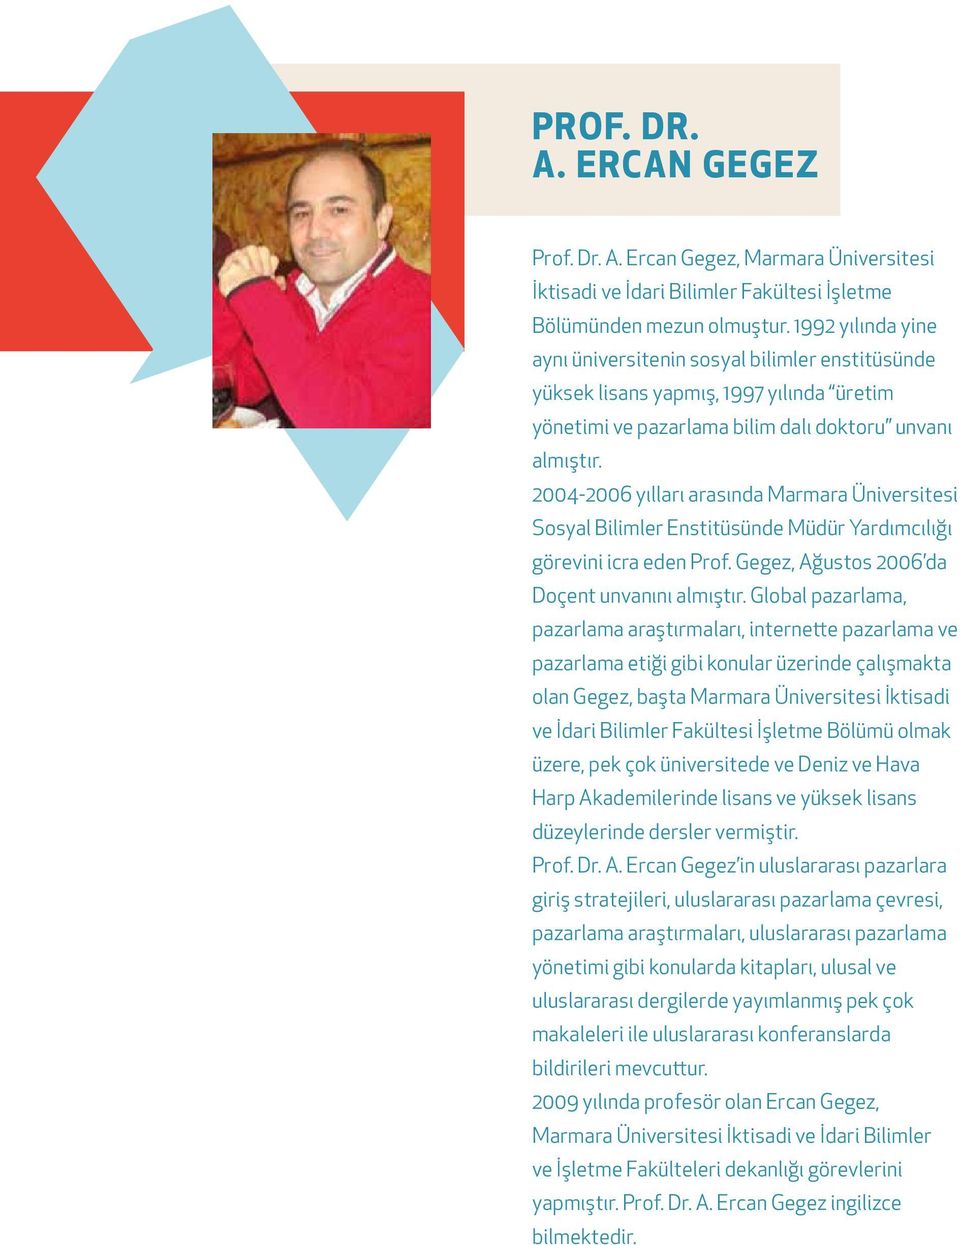 2004-2006 yılları arasında Marmara Üniversitesi Sosyal Bilimler Enstitüsünde Müdür Yardımcılığı görevini icra eden Prof. Gegez, Ağustos 2006 da Doçent unvanını almıştır.